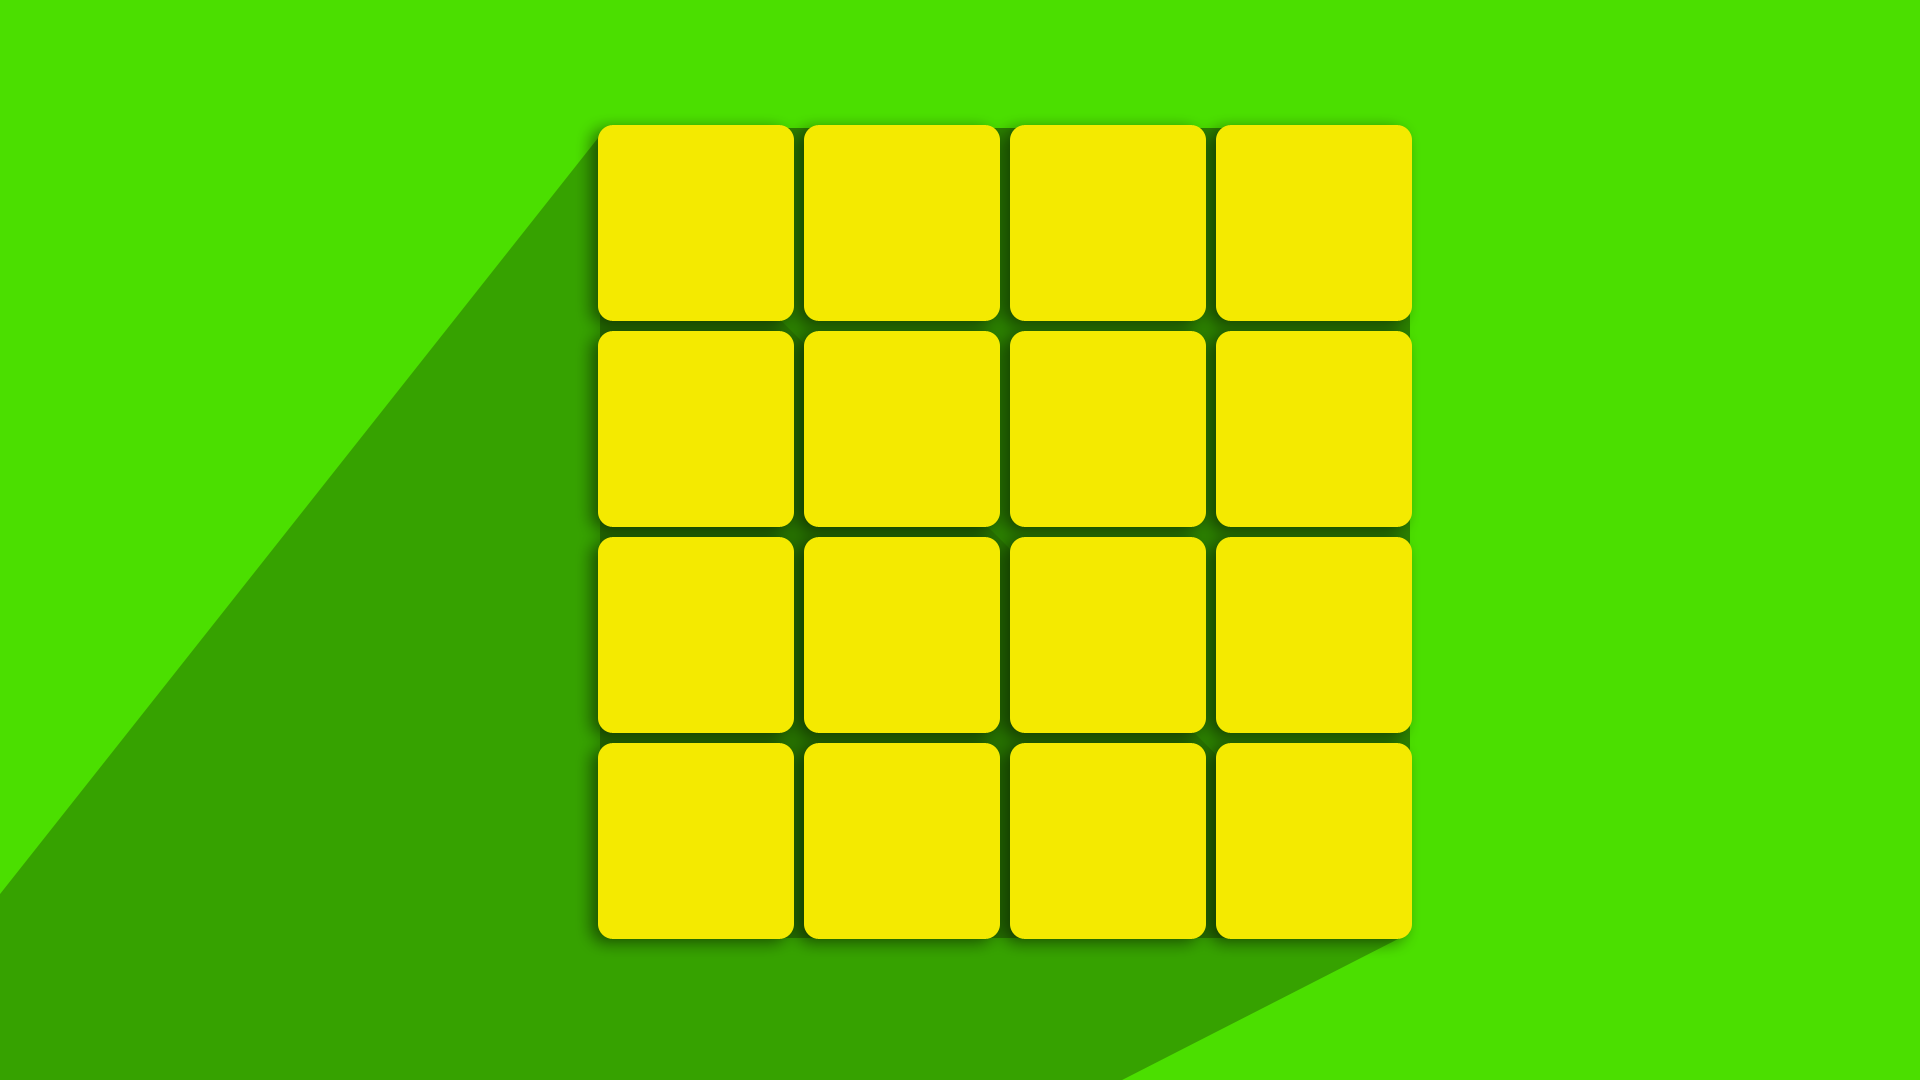 Beginner's Method for Solving the 4x4 Cube